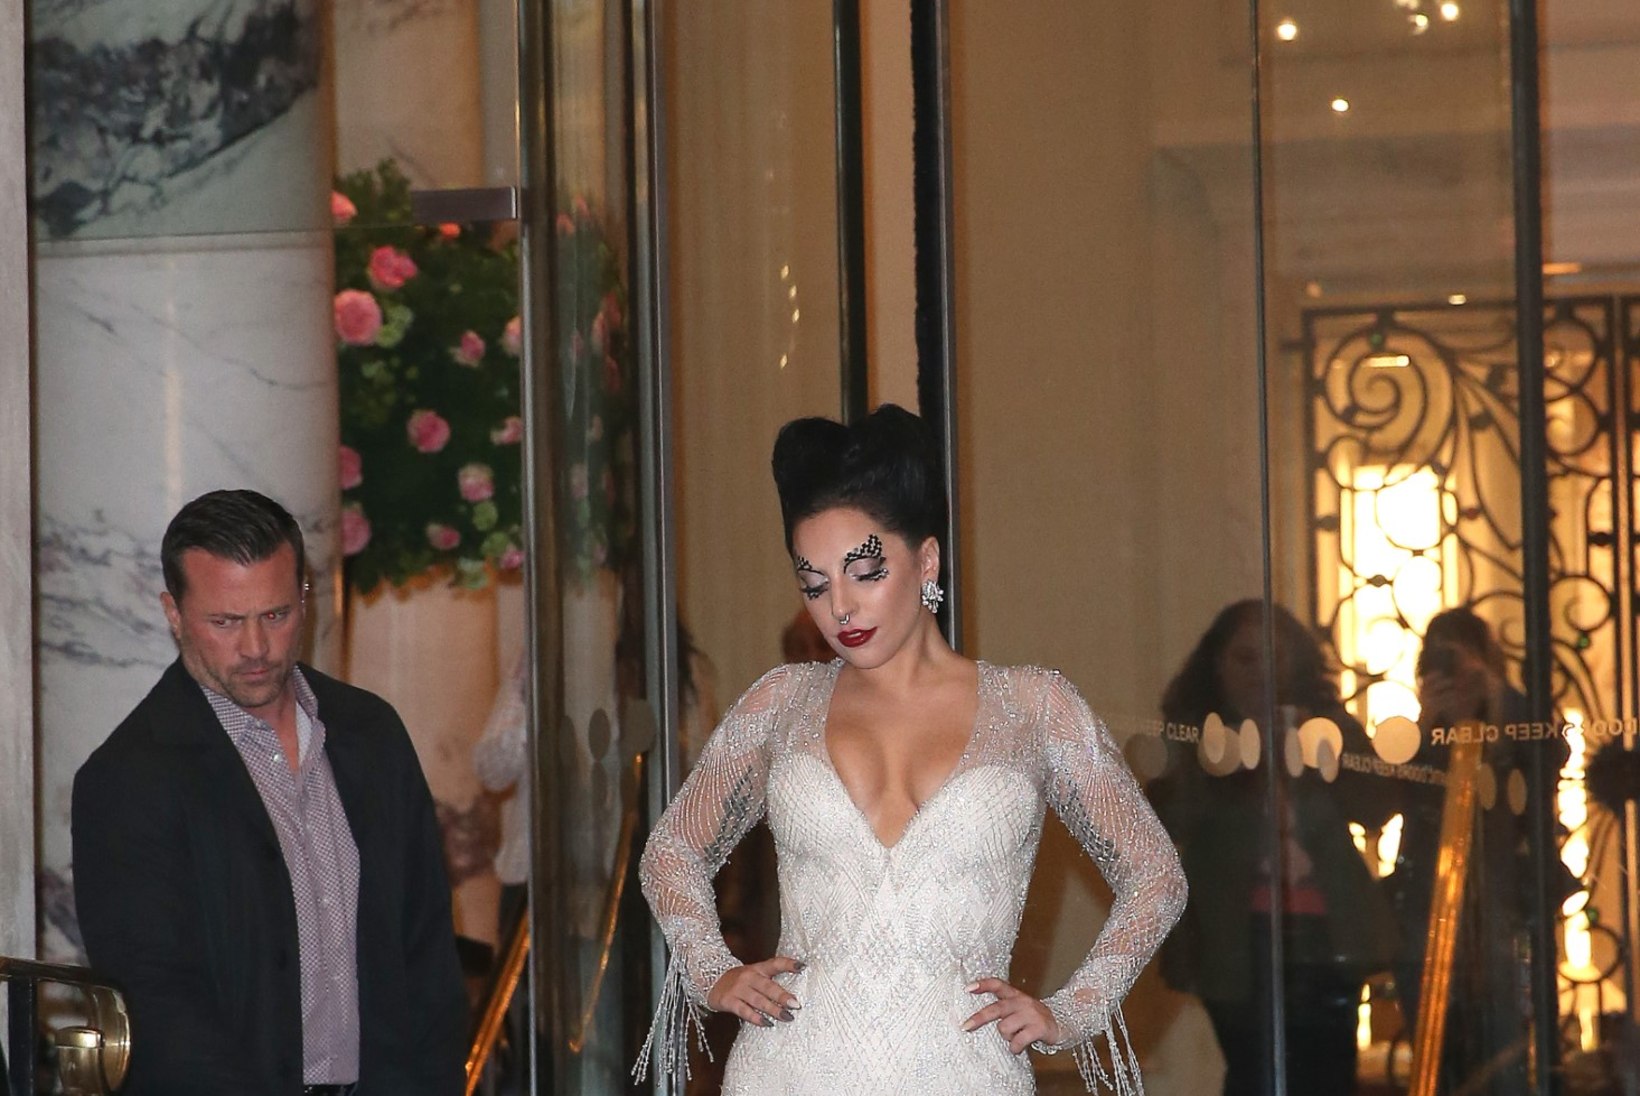 NÄDALA PAPARATSO: Kim Kardashian tähistas 34. sünnipäeva, Lady Gaga klõpsis fännidega selfie'sid, Heidi Klum veetis aega tütardega